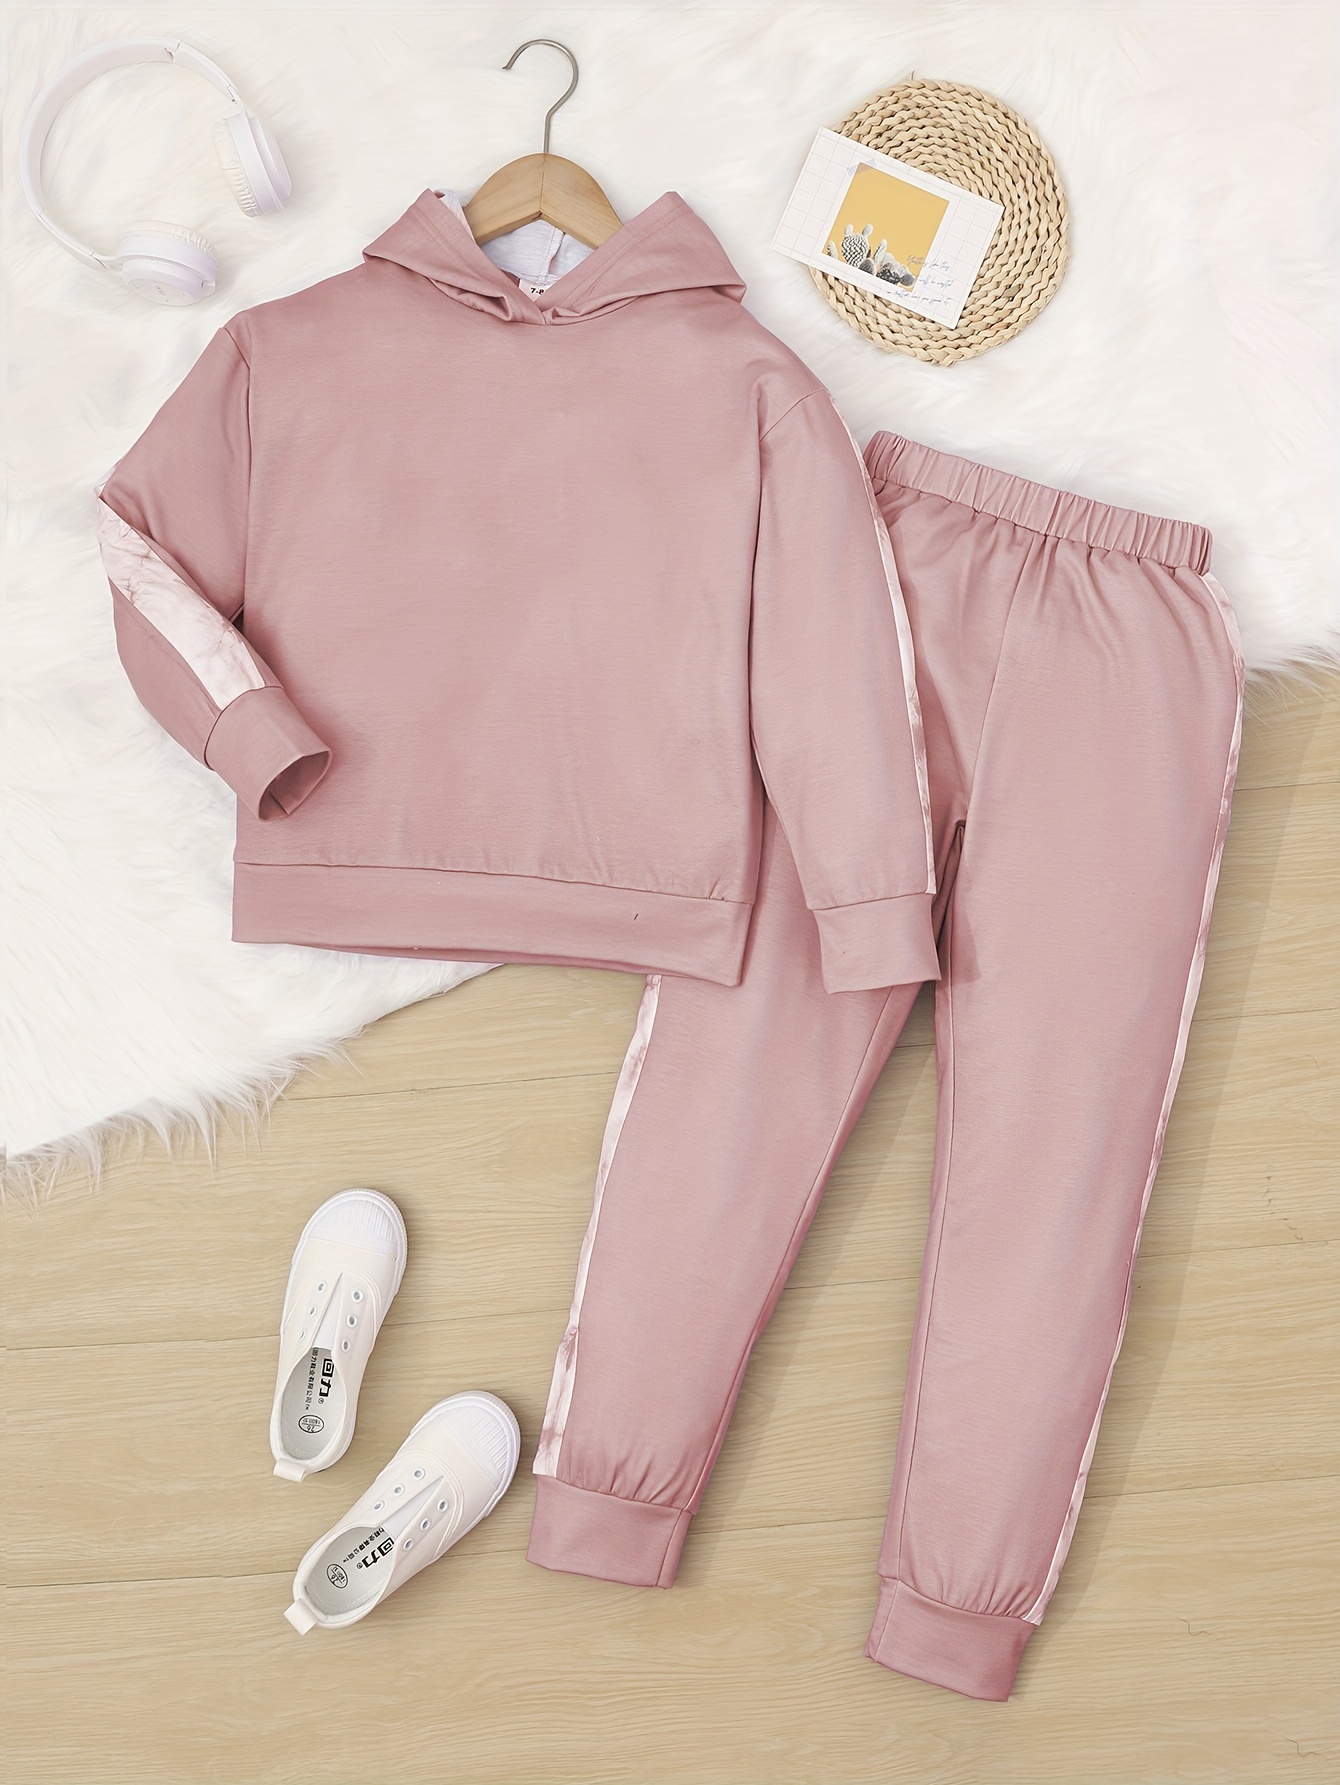 Series 2 Sweatpants - Pink  Pink hoodie, Teenage fashion outfits, Hoodies